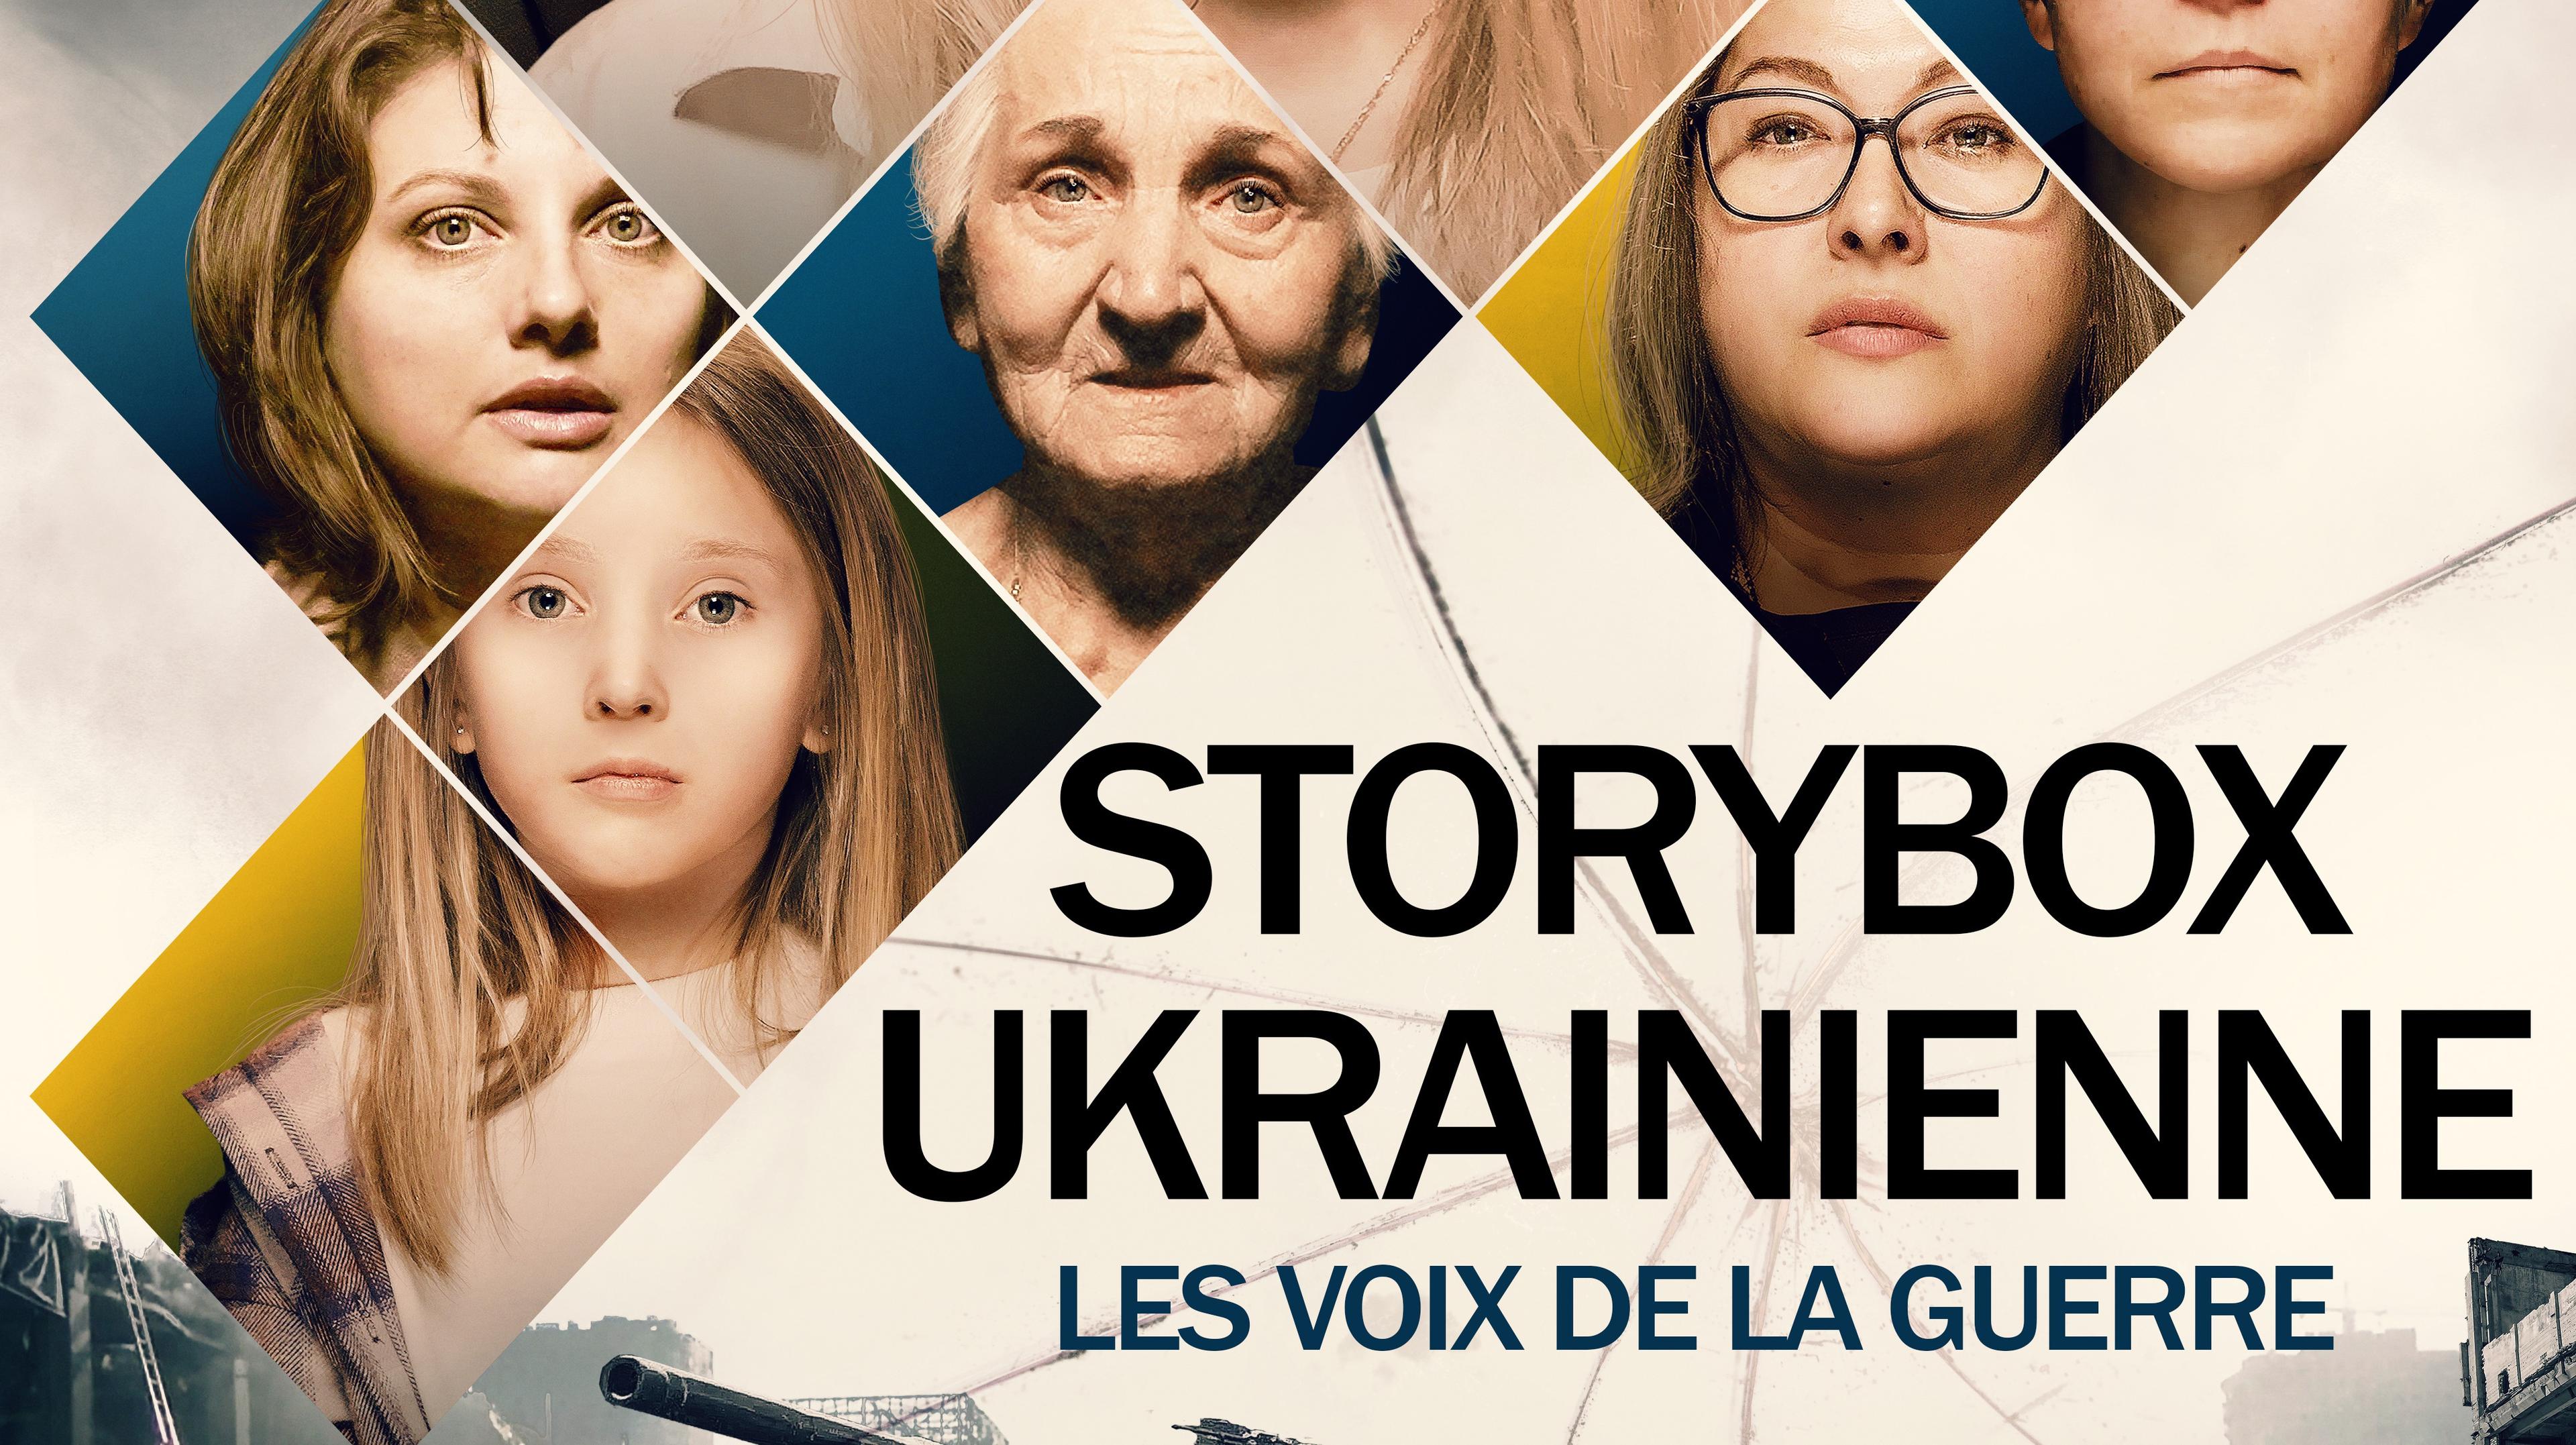 STORYBOX UKRAINIENNE - Les voix de la guerre